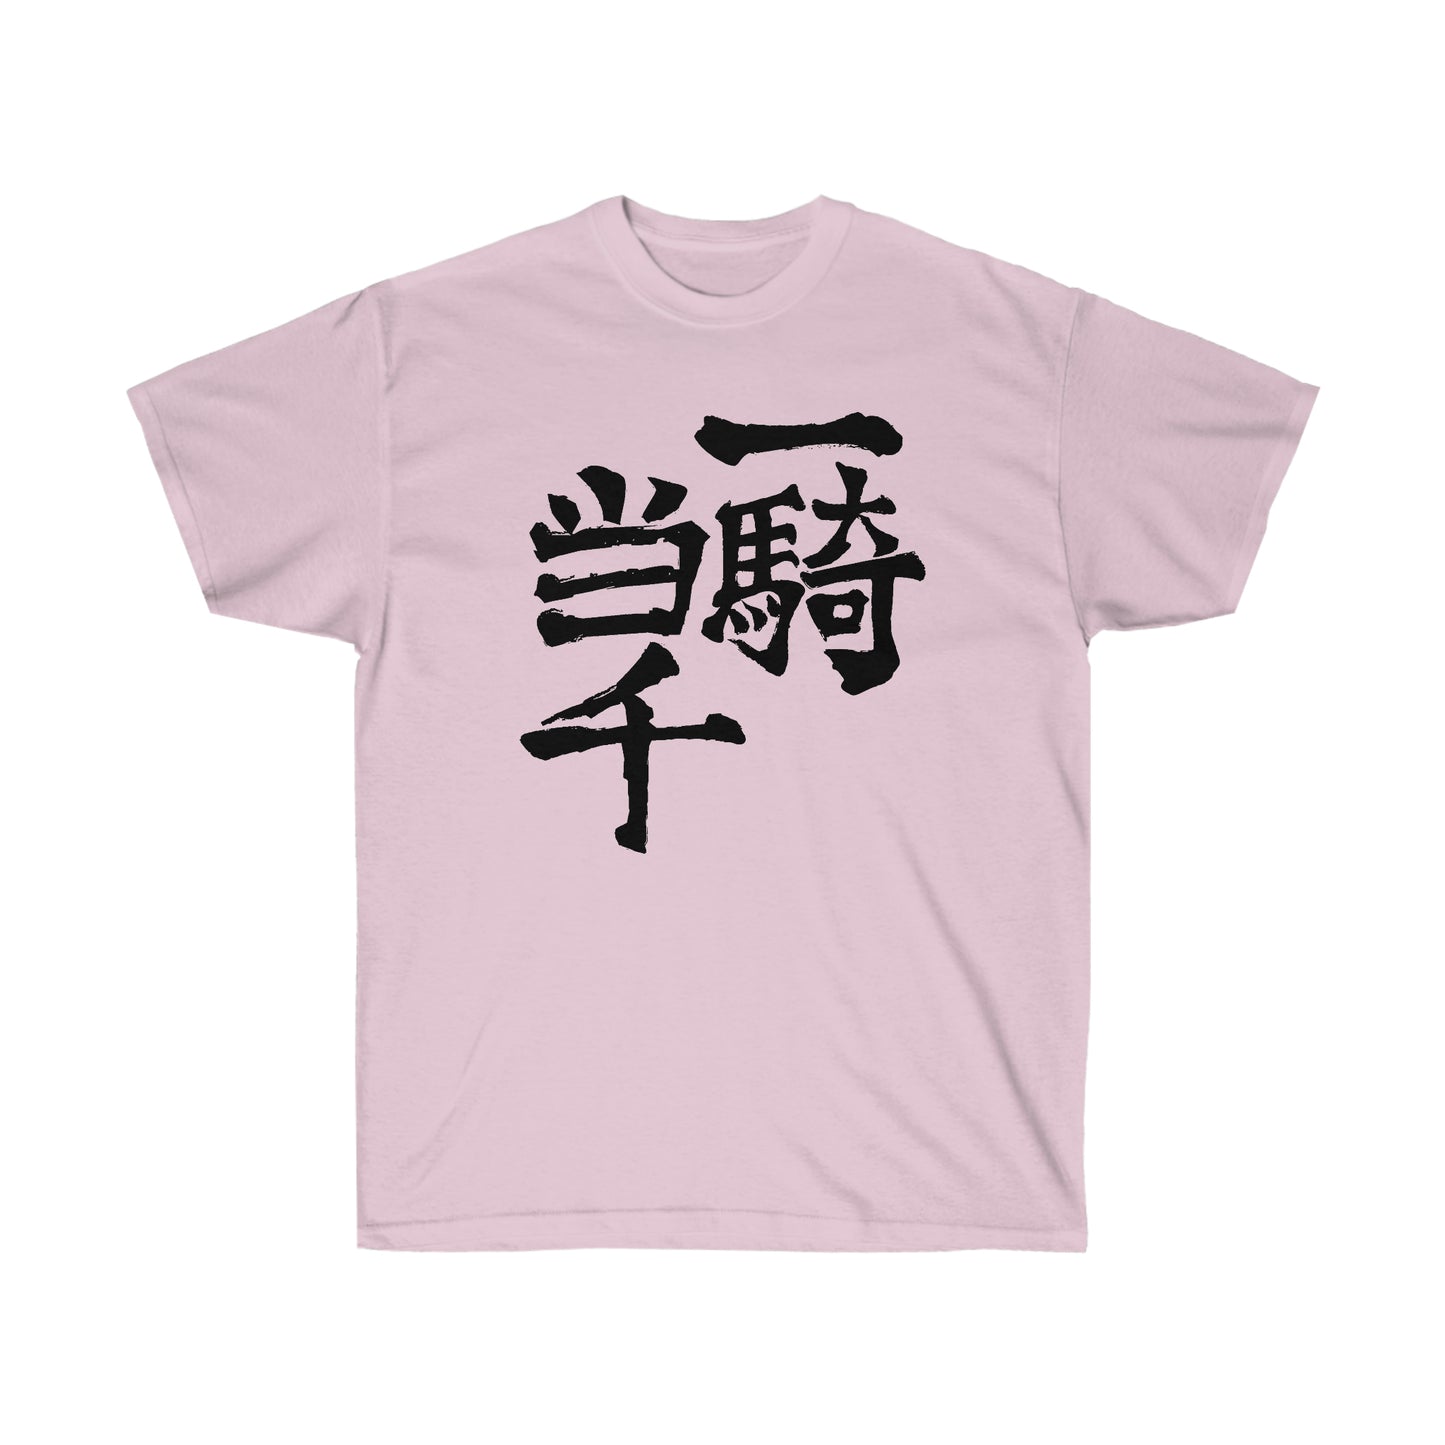 One Man Army Nishinoyas shirt Classic T-Shirt Gym tee